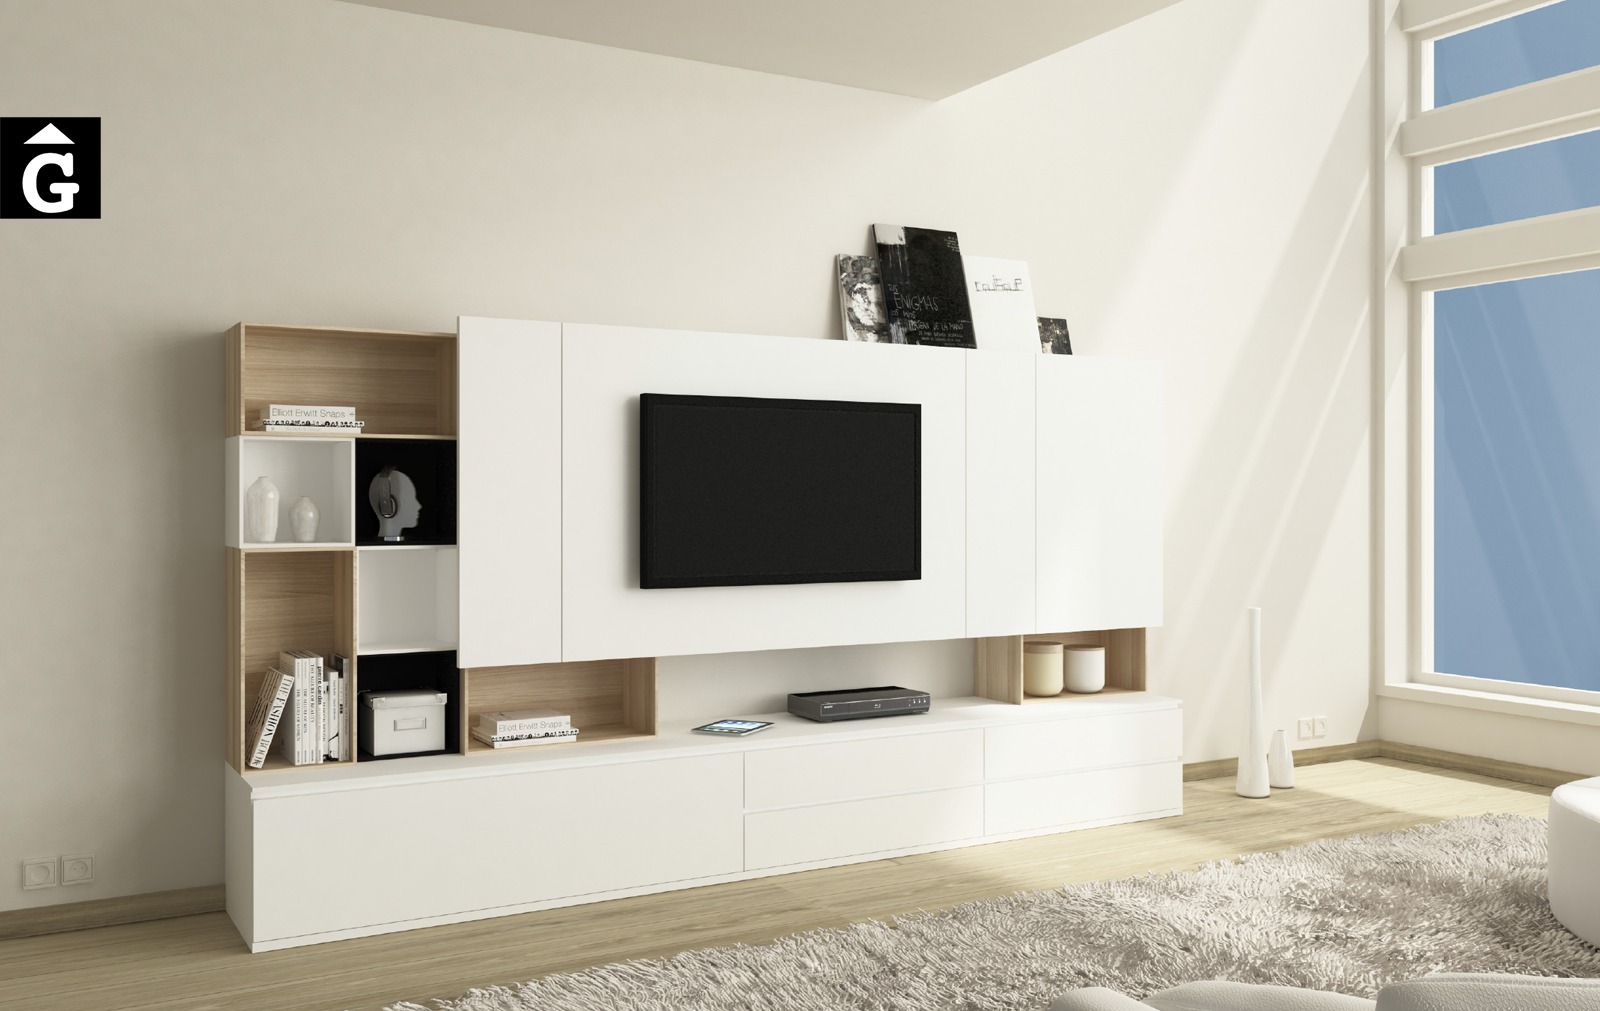 05 P Area mobles Ciurans per mobles Gifreu programa modular disseny atemporal realitzat amb materials i ferratges de qualitat estil modern minimal